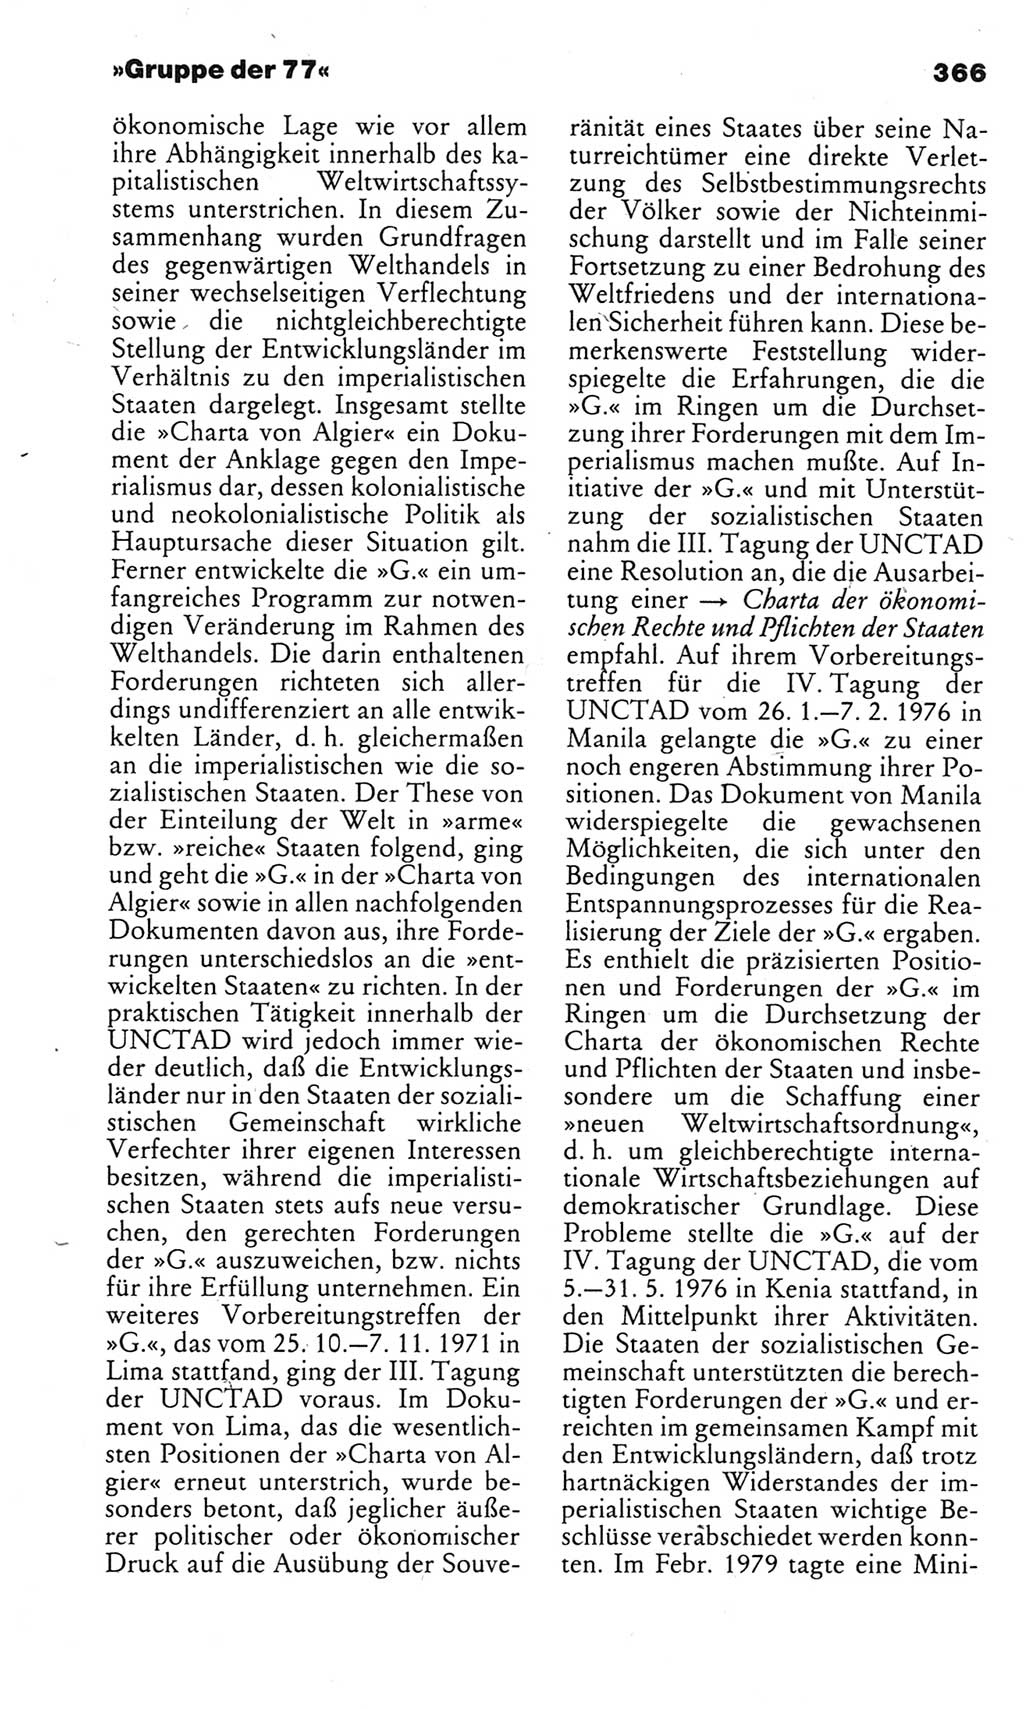 Kleines politisches Wörterbuch [Deutsche Demokratische Republik (DDR)] 1983, Seite 366 (Kl. pol. Wb. DDR 1983, S. 366)